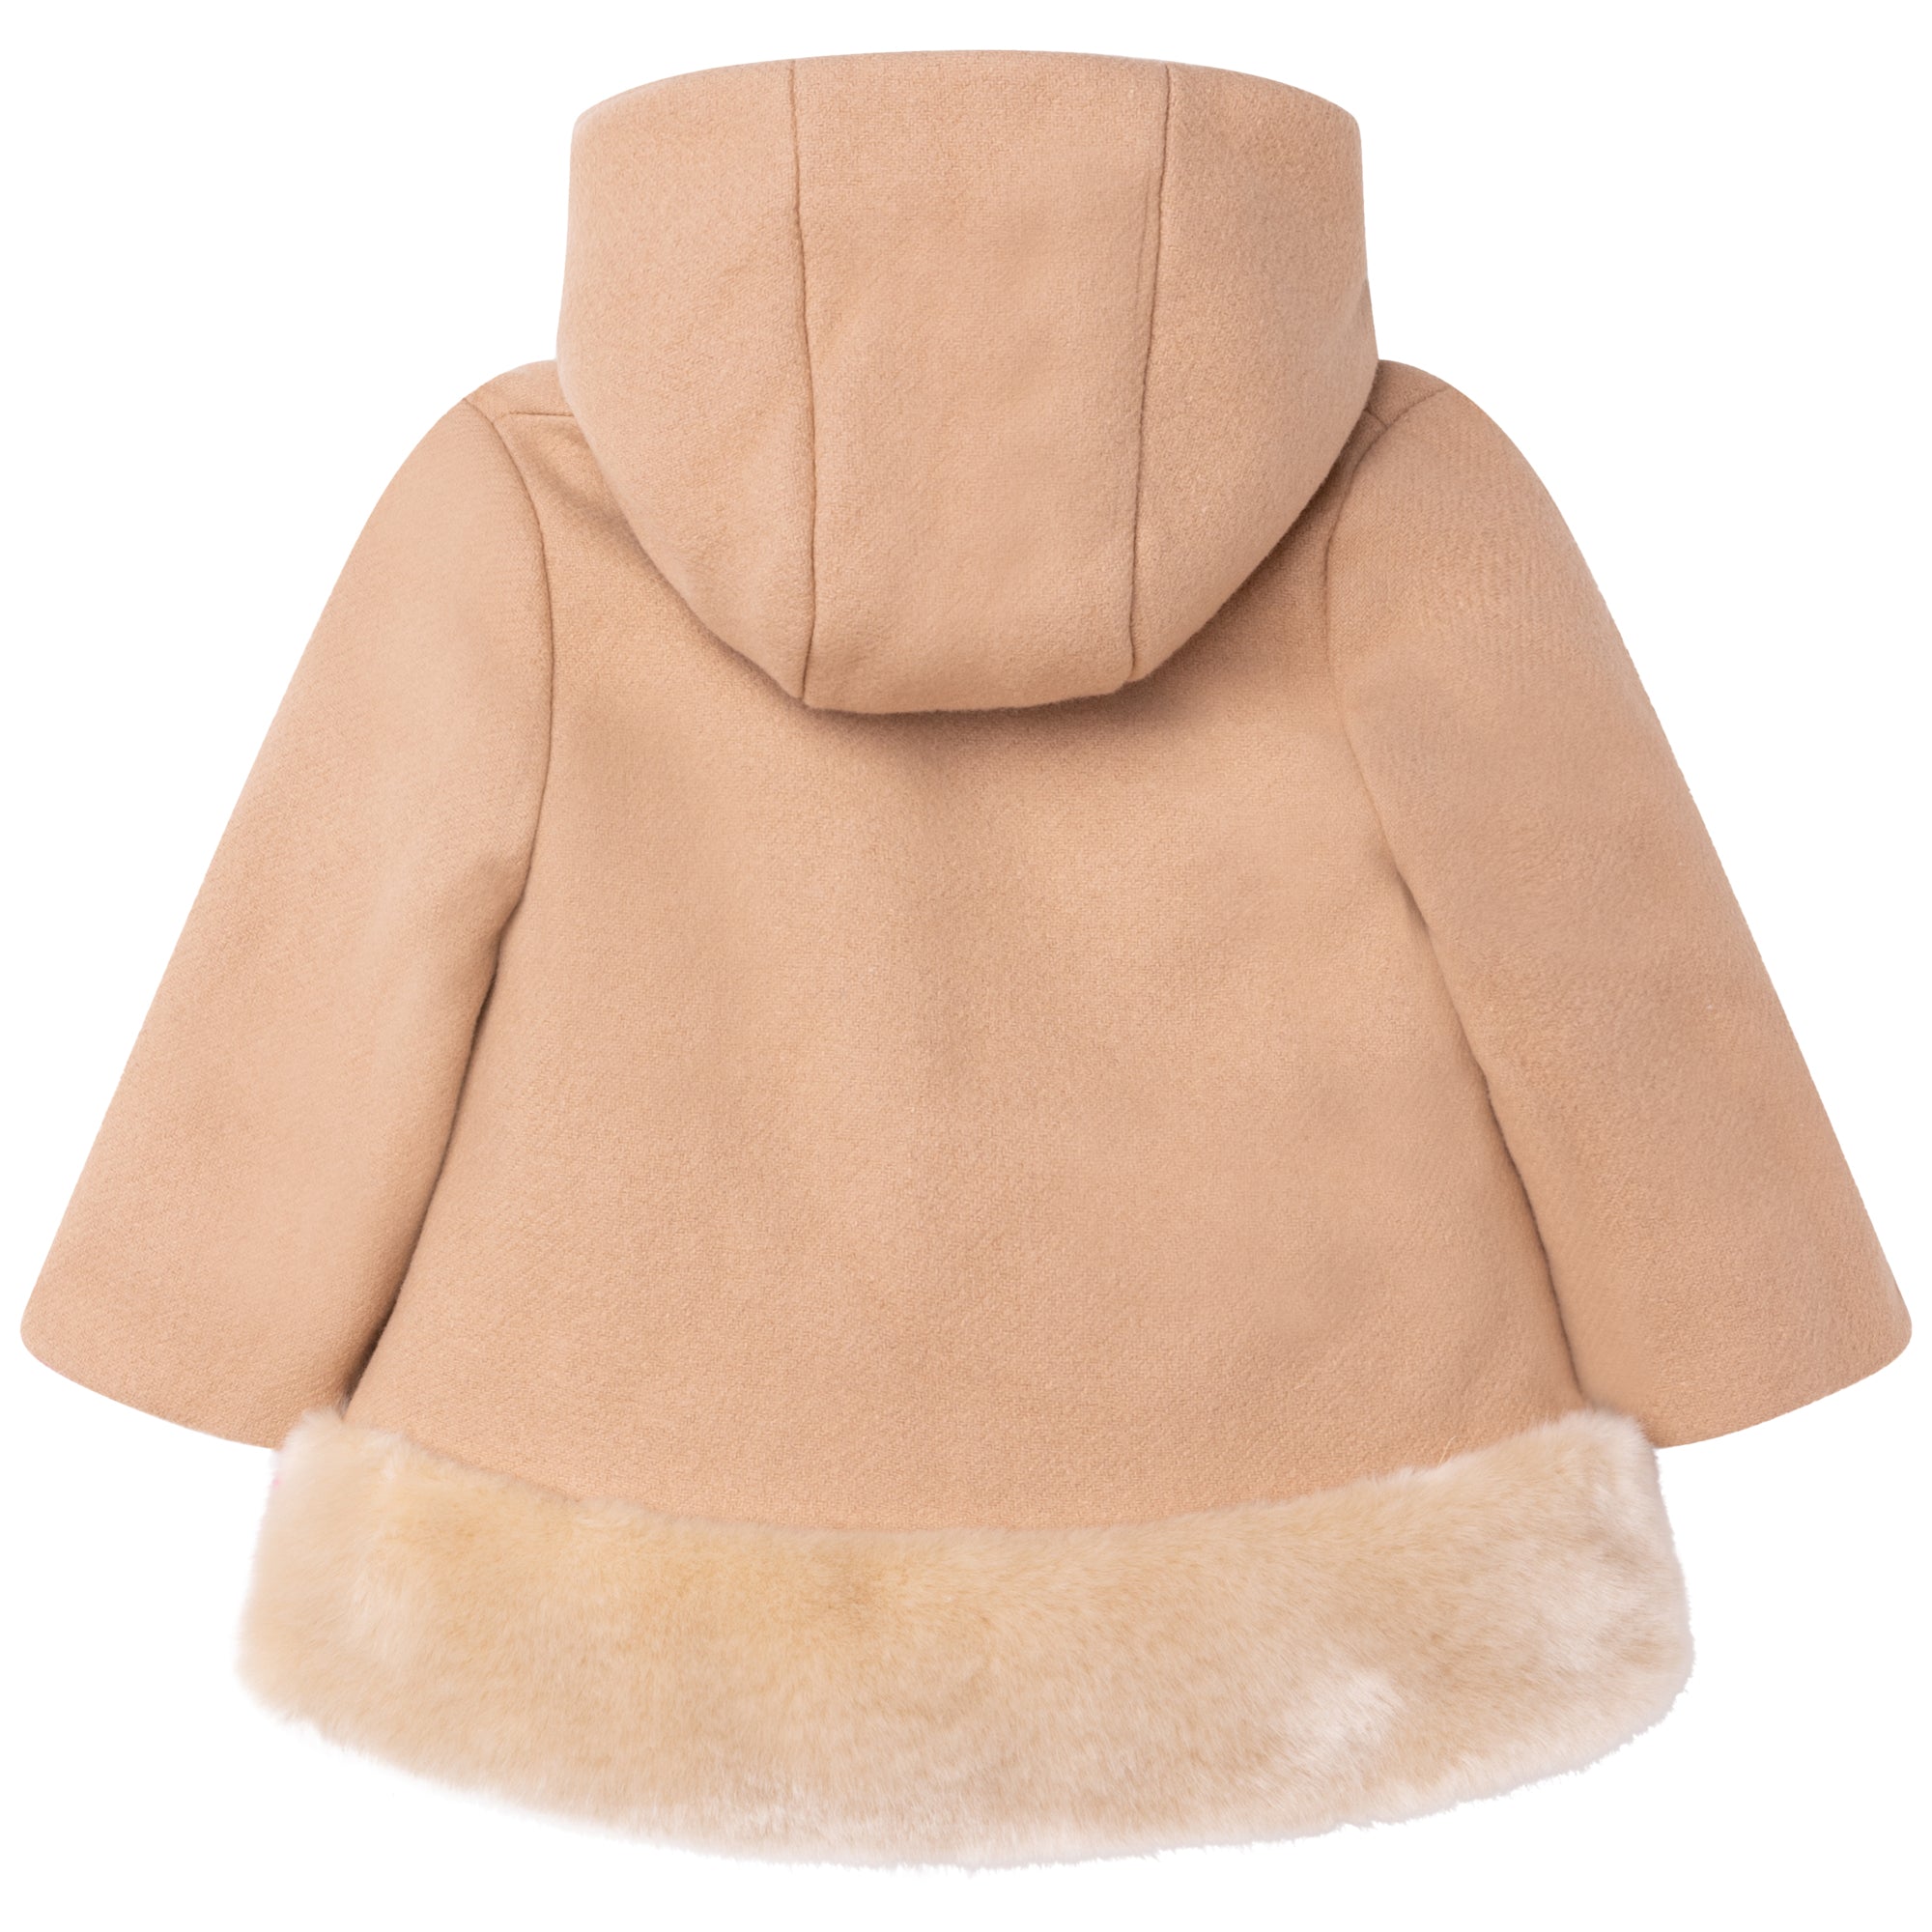 Baby Girls Beige Hooded Coat